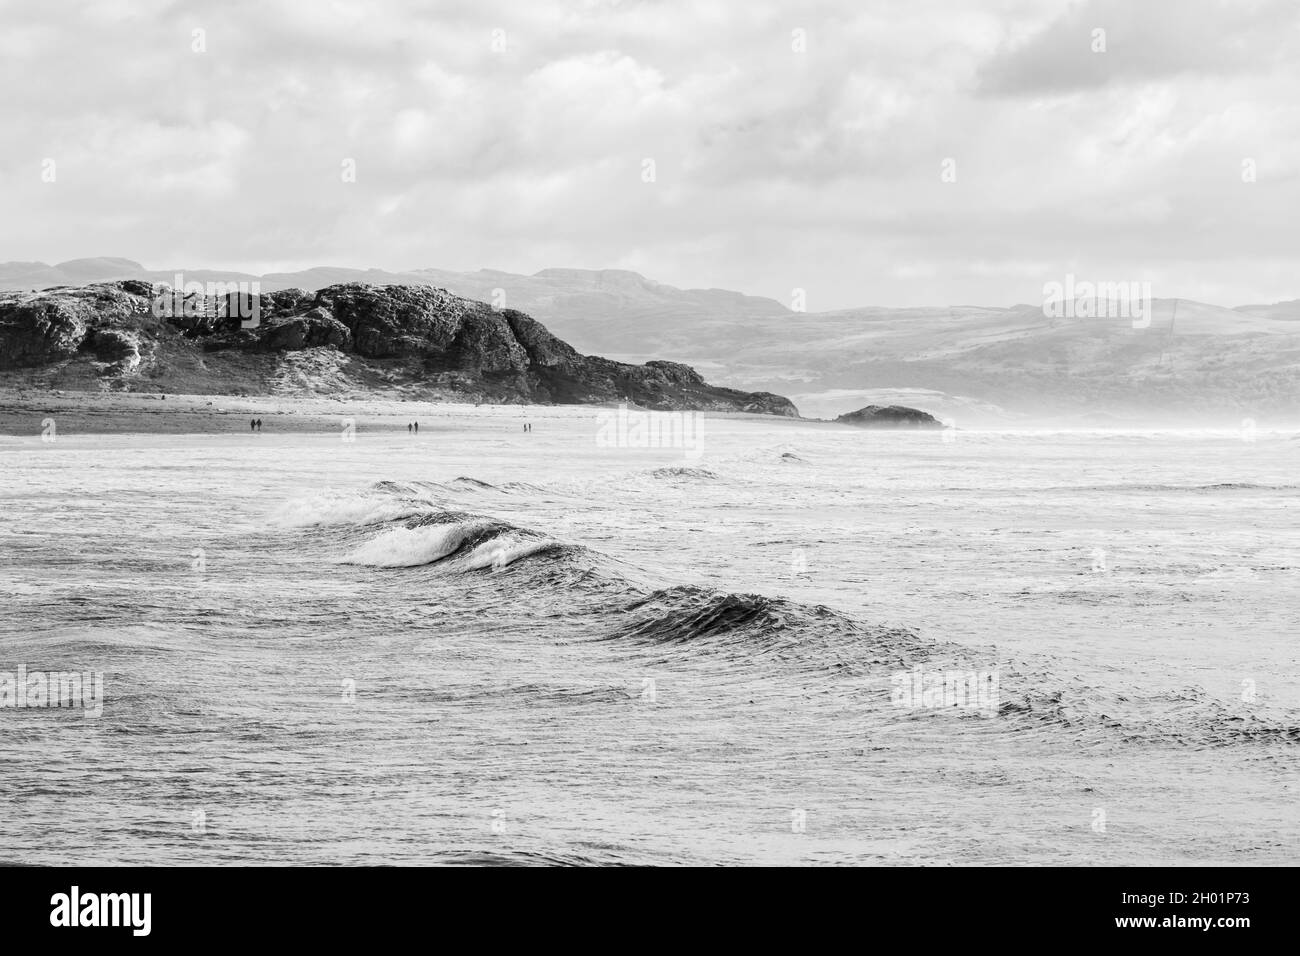 Le onde si infrangono sulla spiaggia di Criccieth sulla costa del Galles del Nord mentre le montagne di Snowdonia si snodano sullo sfondo. Foto Stock